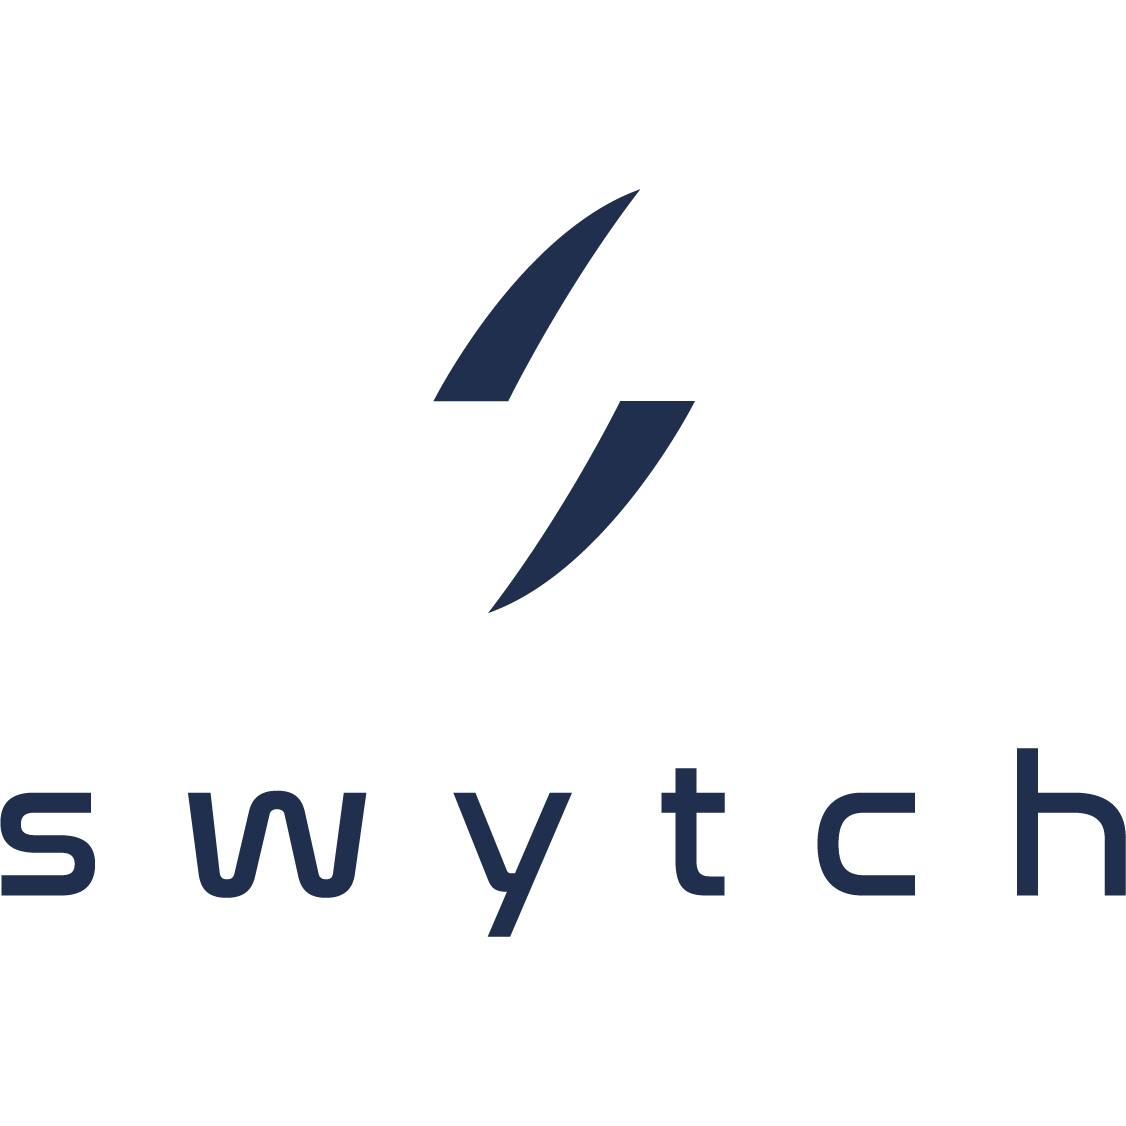 swytch